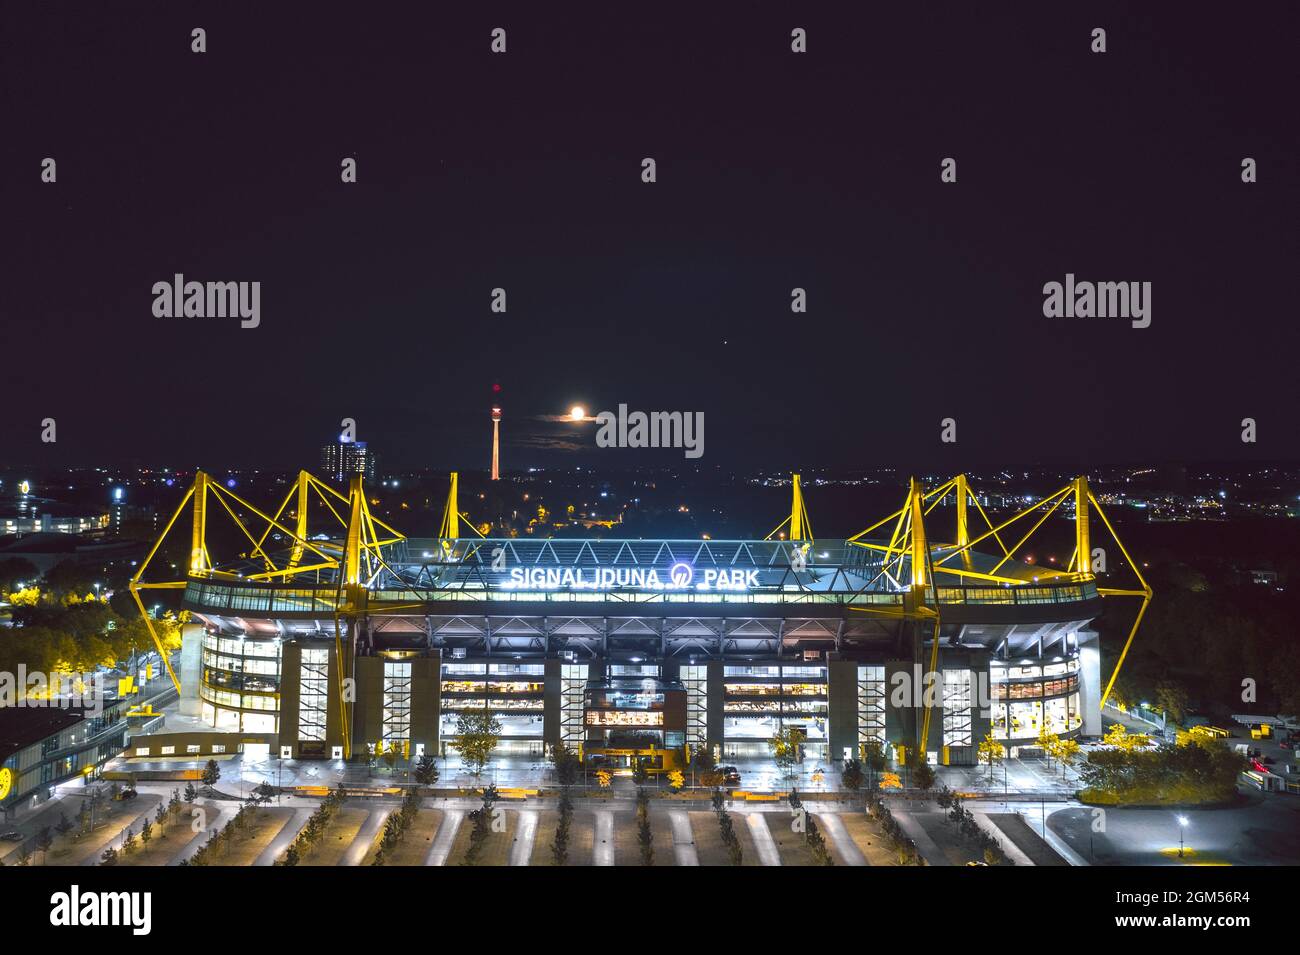 Dortmund, Allemagne - octobre 2020: Westfalenstadion se prépare à accueillir le match à domicile de Borussia Dortmund Banque D'Images